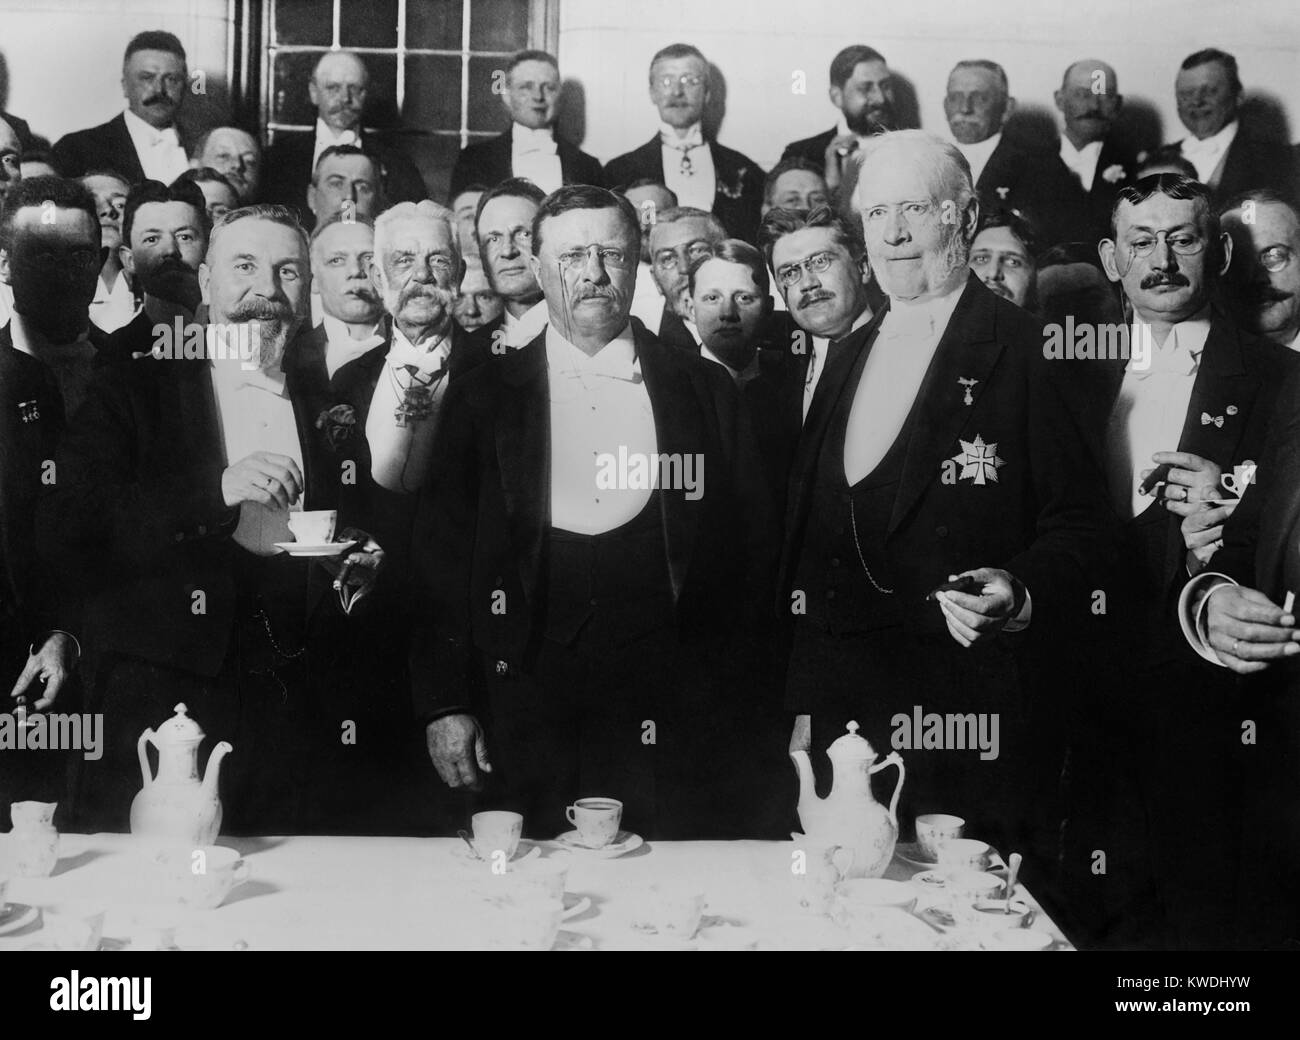 Ex-President Theodore Roosevelt a City Hall a banchetto, Copenaghen, 7 maggio 1910. TR è la figura centrale affiancato da uomini in royal abito formale (BSLOC 2017 8 18) Foto Stock